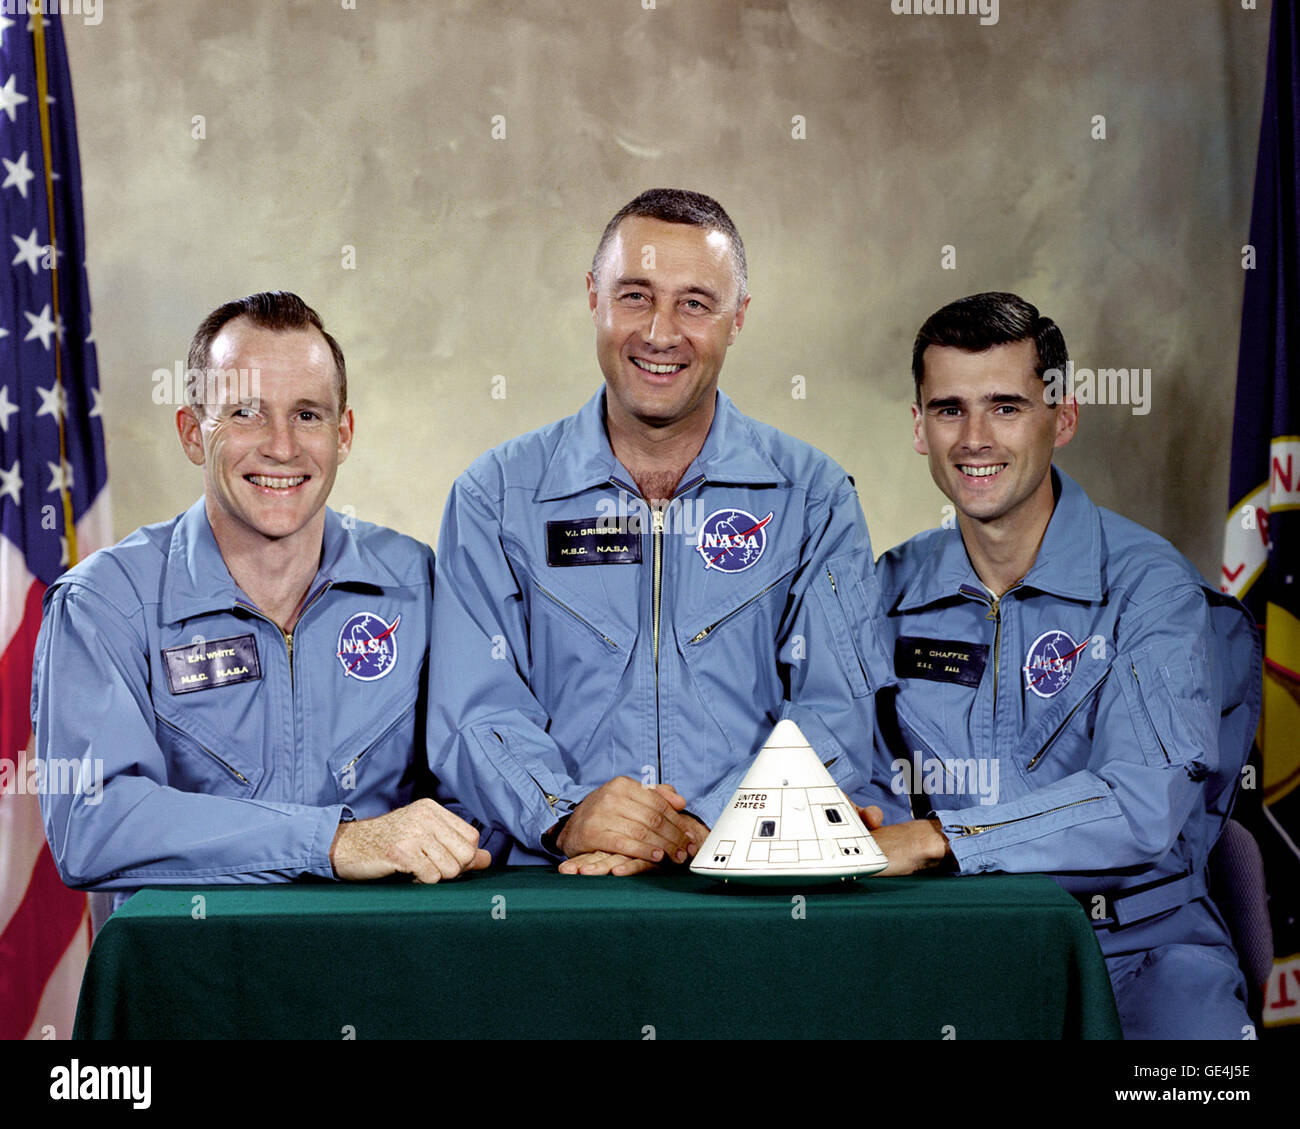 Porträt der Apollo 1 Prime Crew für die ersten Apollo-Raumfahrt. Von links nach rechts sind: Edward H. White II, I. Virgil "Gus" Grissom und Roger B. Chaffee. Ihre Zuordnung zu dieser Crew teilte am 21. März 1965.  Am 27. Januar 1967 um 6:31 PM EST während einer routinemäßigen simulierten Start testen an Bord der Apollo Saturn ich Rakete, ein elektrischer Kurzschluss in Apollo-Kommandokapsel entzündet Reinsauerstoff Umwelt und innerhalb von wenigen Sekunden alle drei Besatzungsmitglieder der Apollo 1 umgekommen sind.   Bild #: S66-30236 Datum: 31. März 1966 Stockfoto